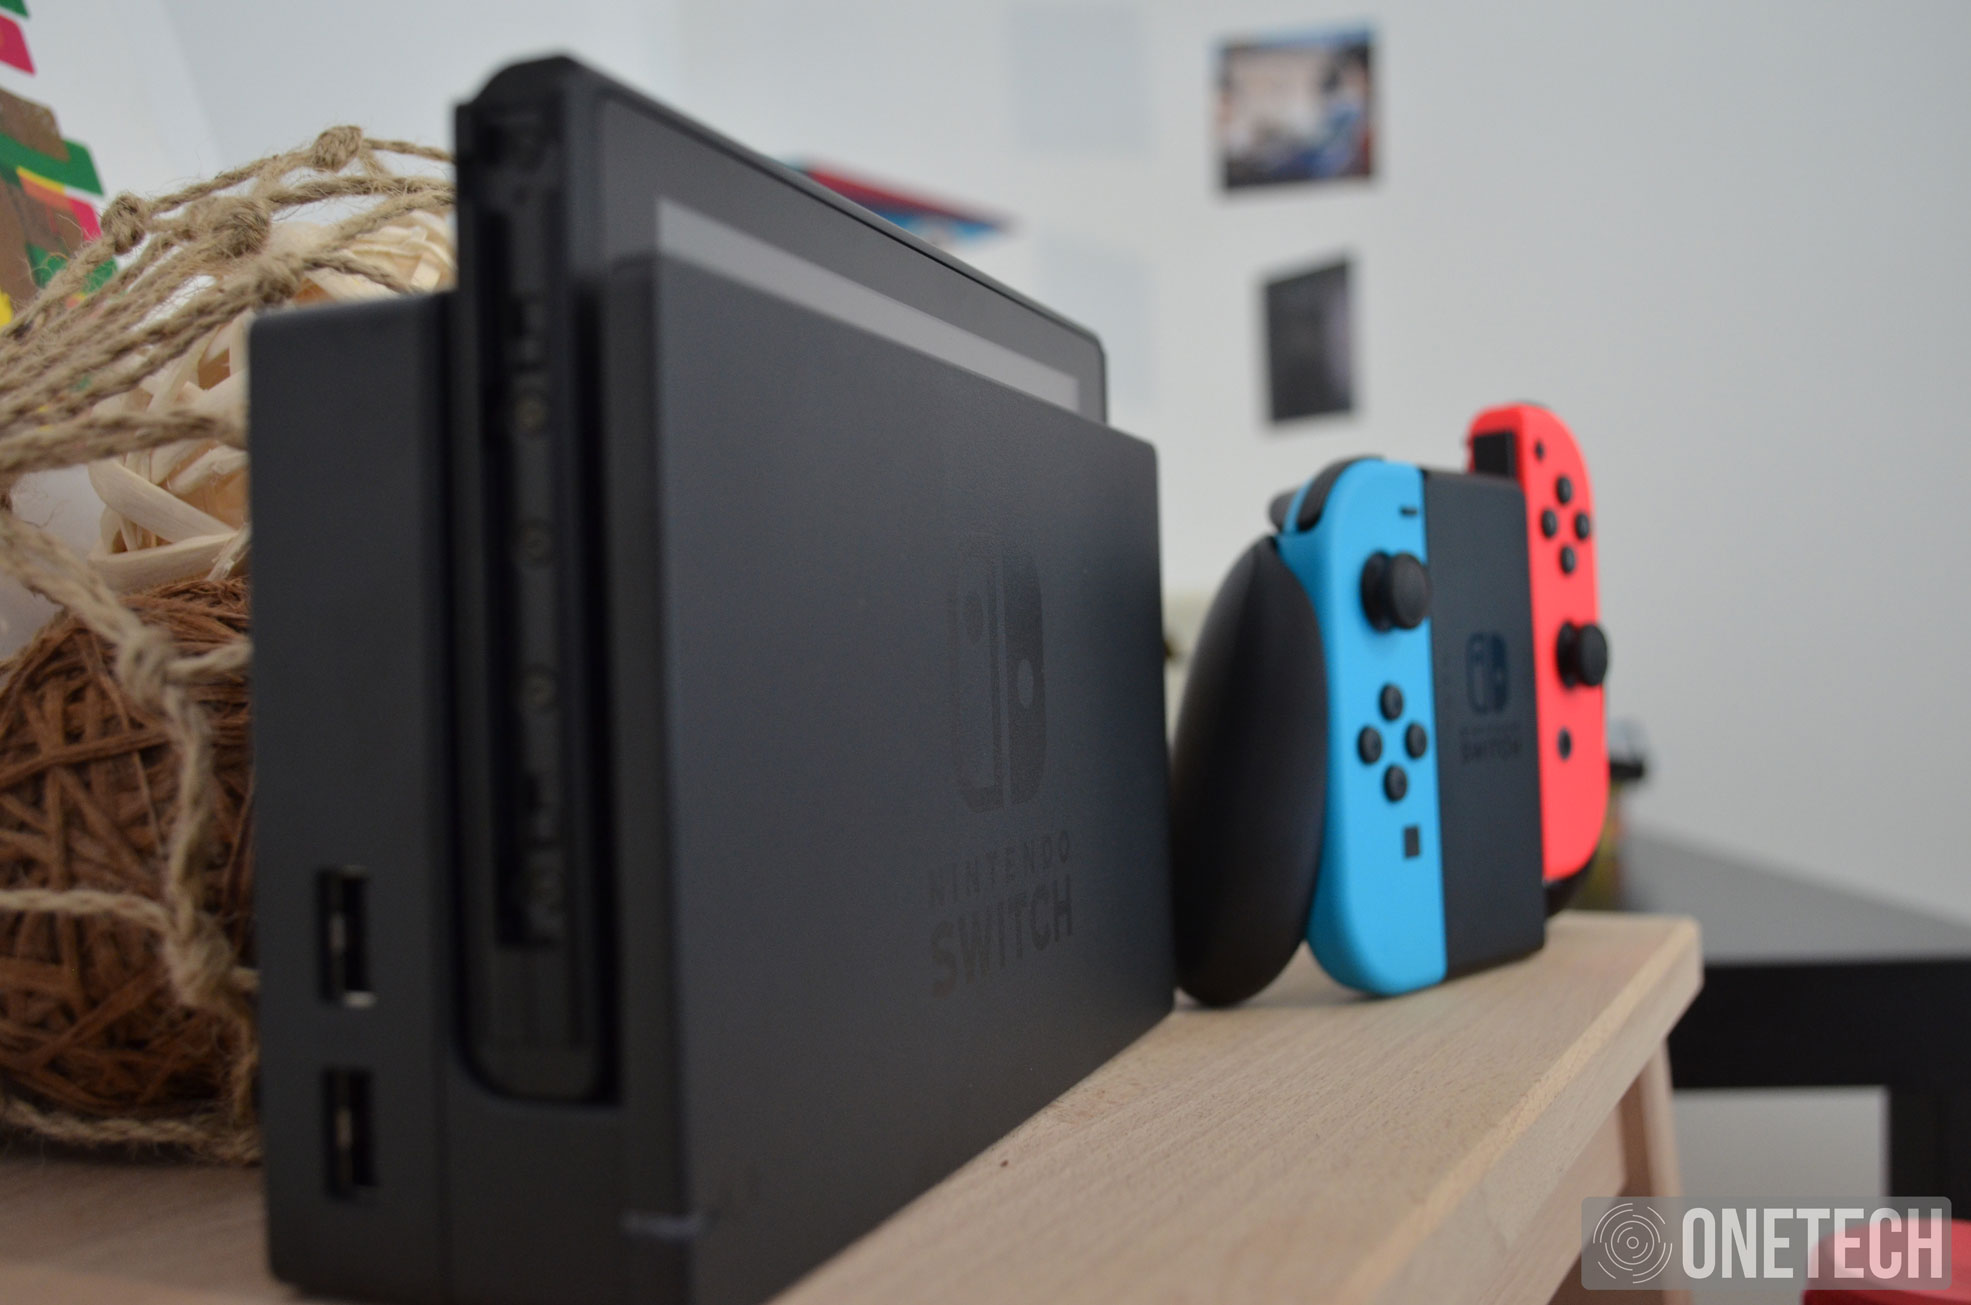 Nintendo Switch registra 2.74 millones de unidades vendidas en menos de 1 mes